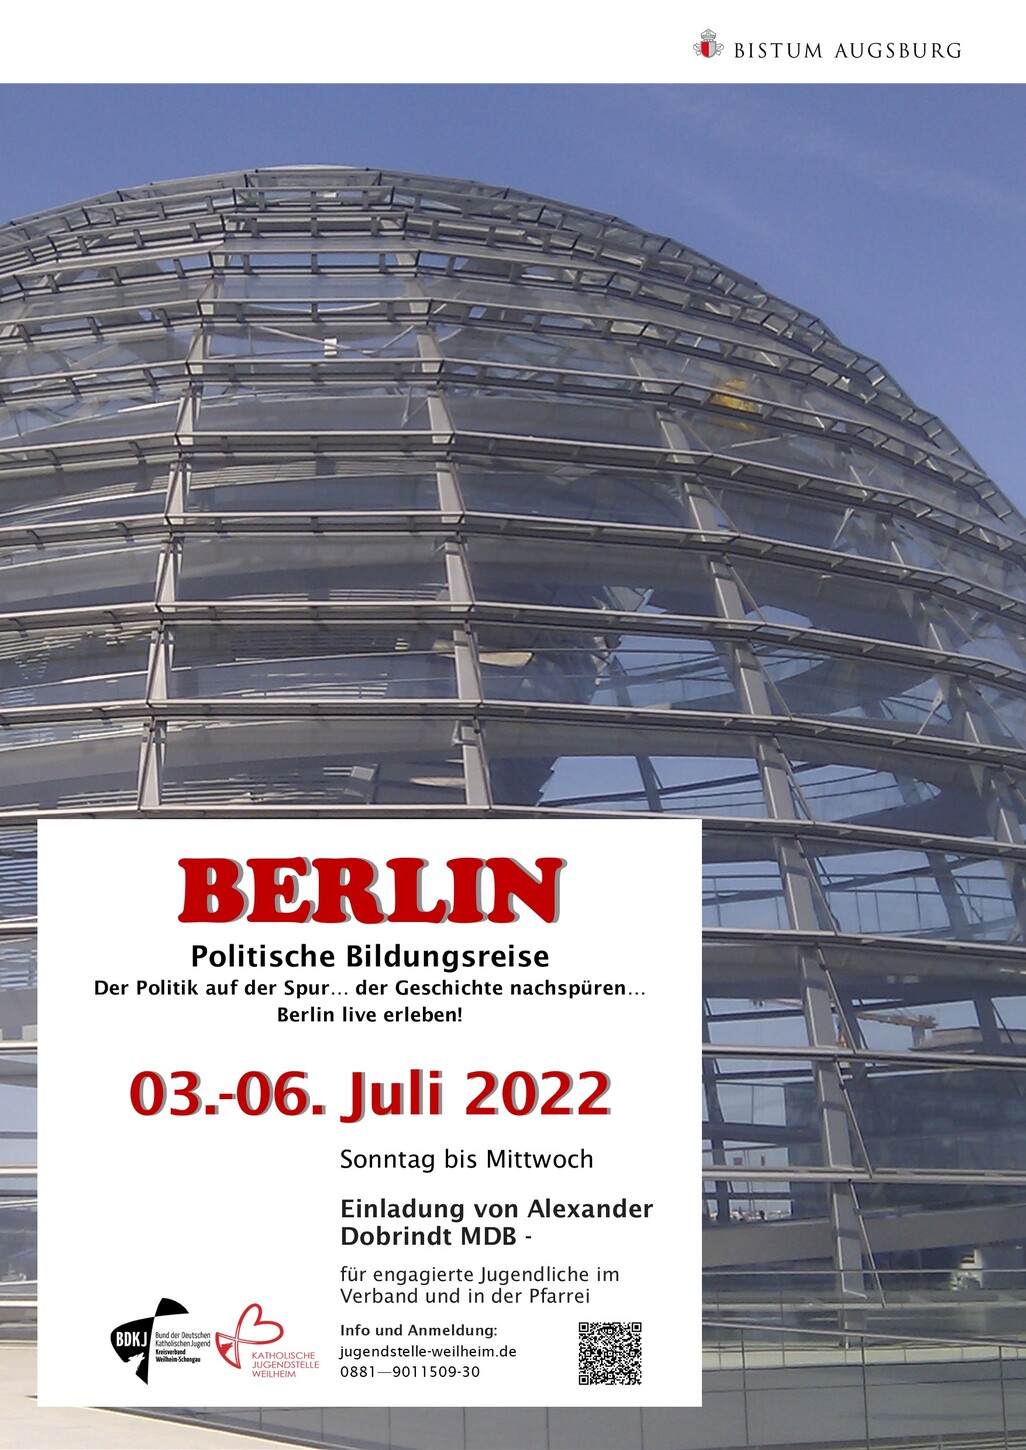 BERLIN - Politische Bildungsreise (Sonntag, 03. Juli 2022)